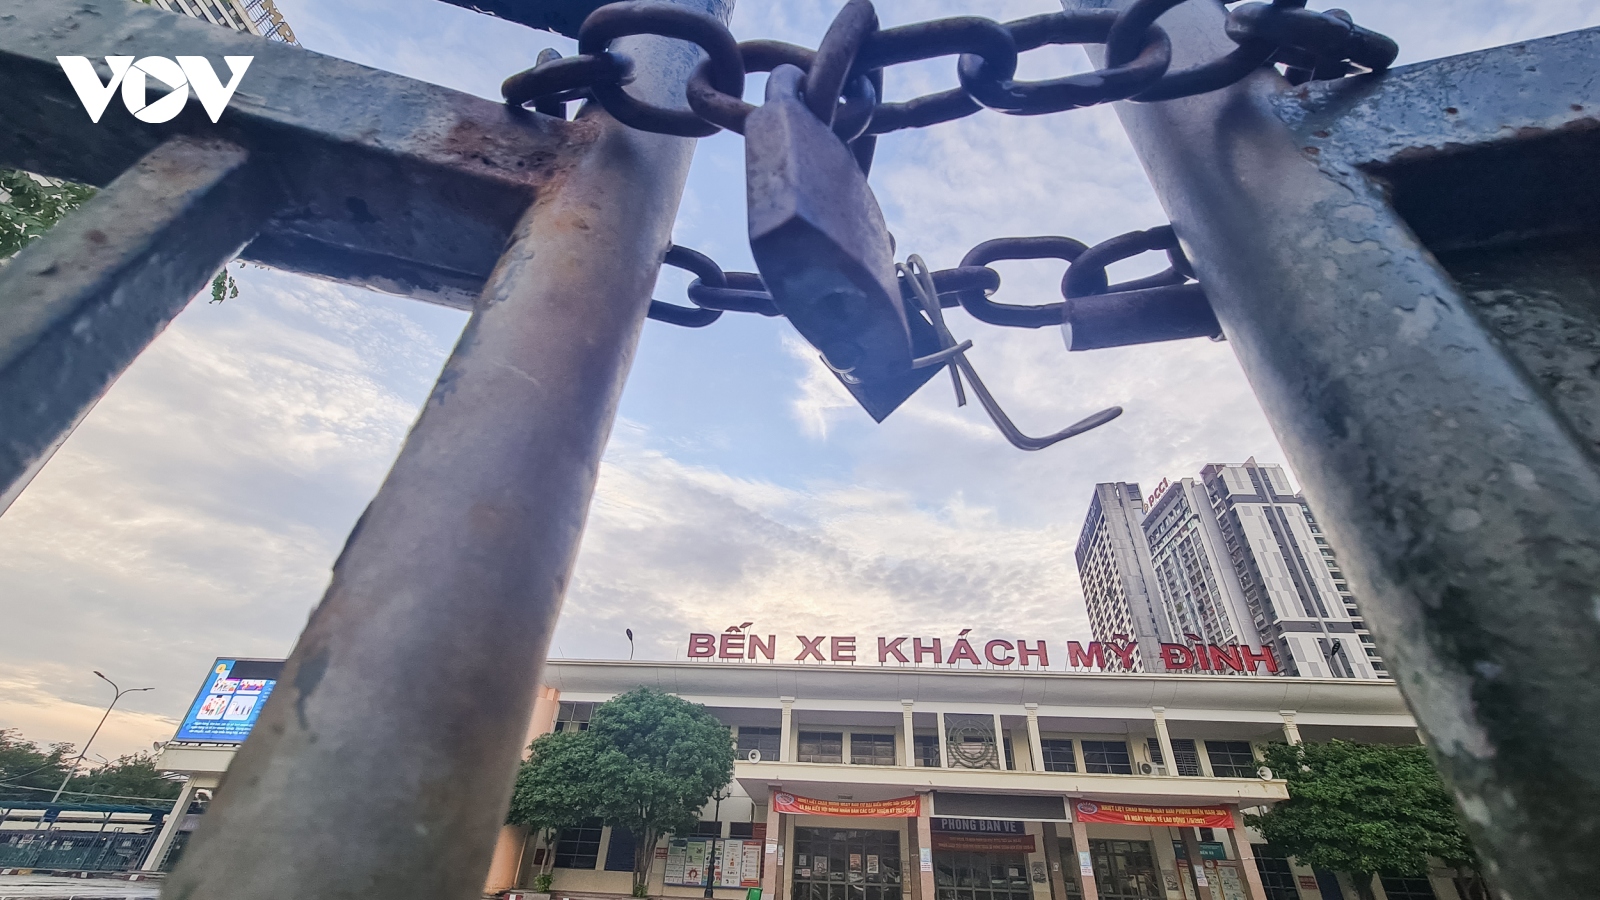 Quang cảnh vắng lặng tại các bến xe ở Hà Nội trong thời gian giãn cách xã hội